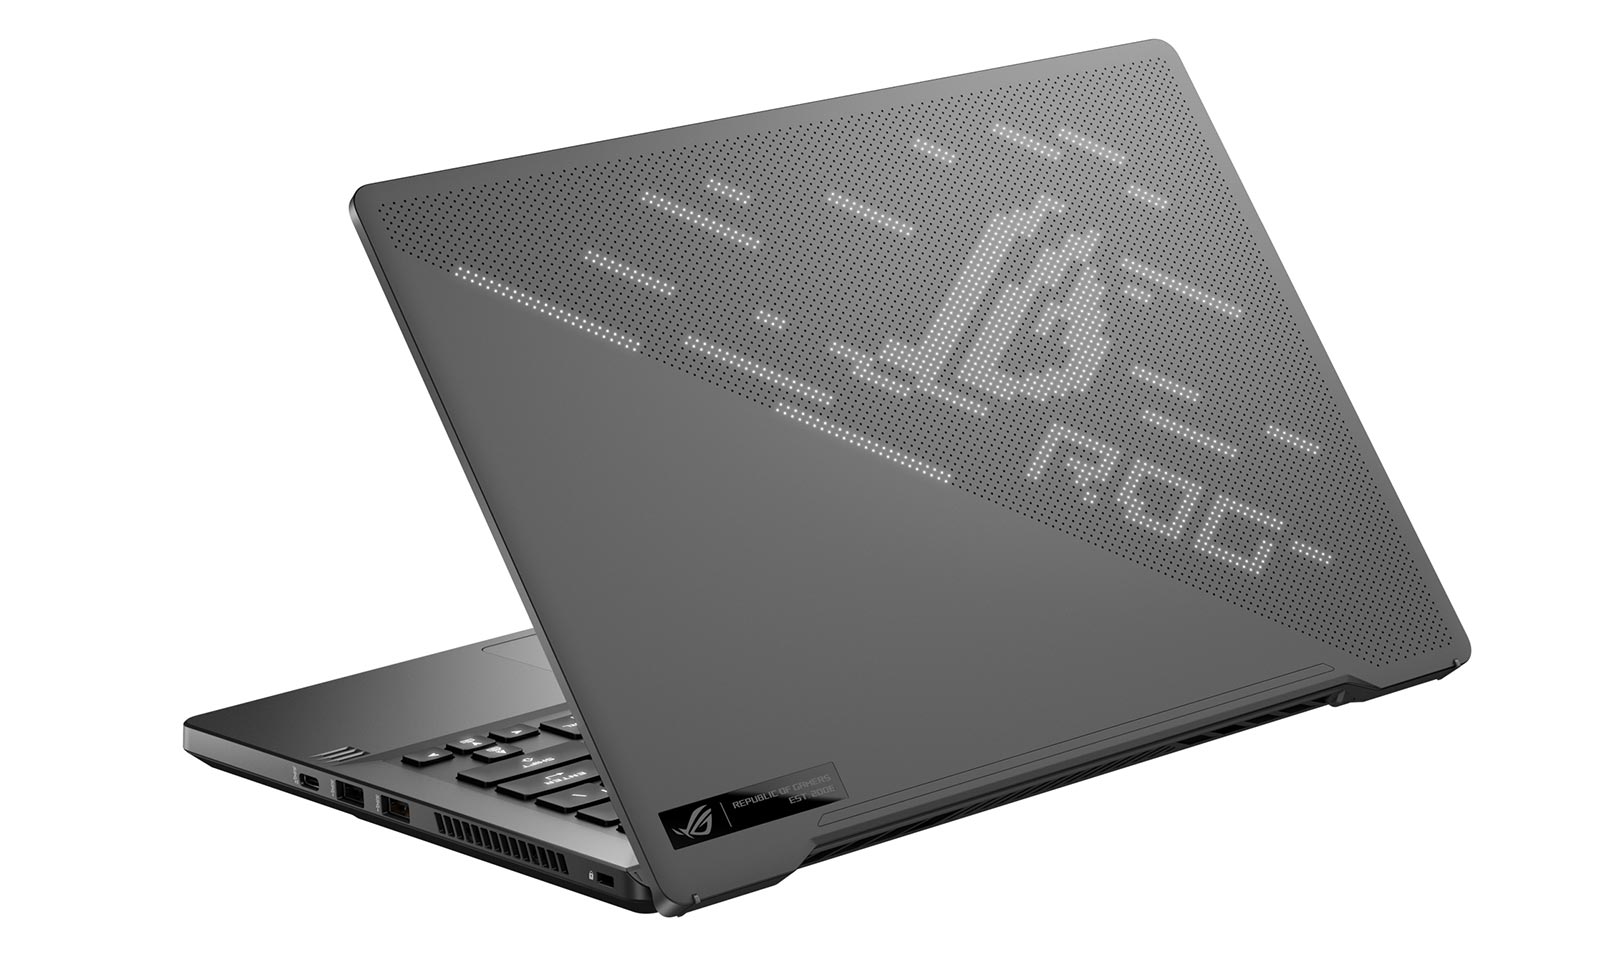 Laptopul de gaming ROG Zephyrus G14 prezentat la CES 2020